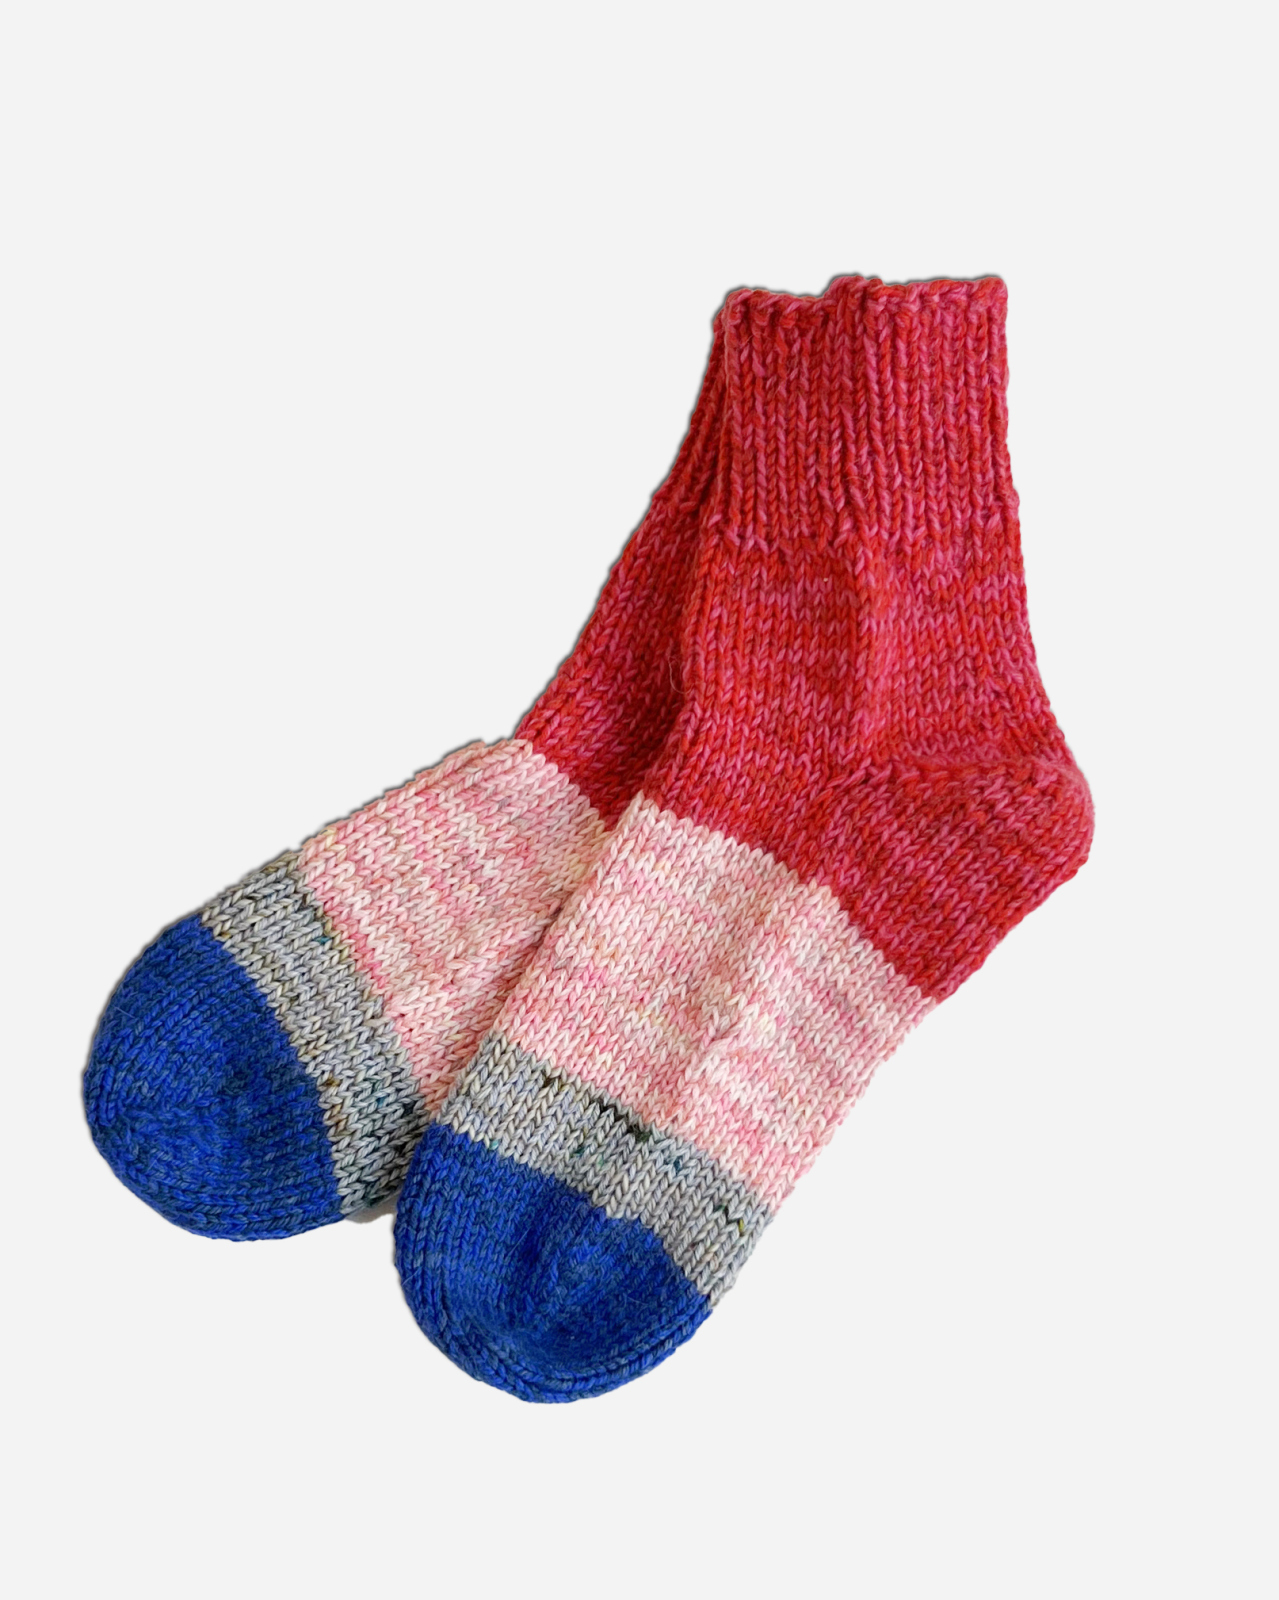 ちきくつした 手編みの靴下 | Giiton-Store(ギートンストア) | Giiton